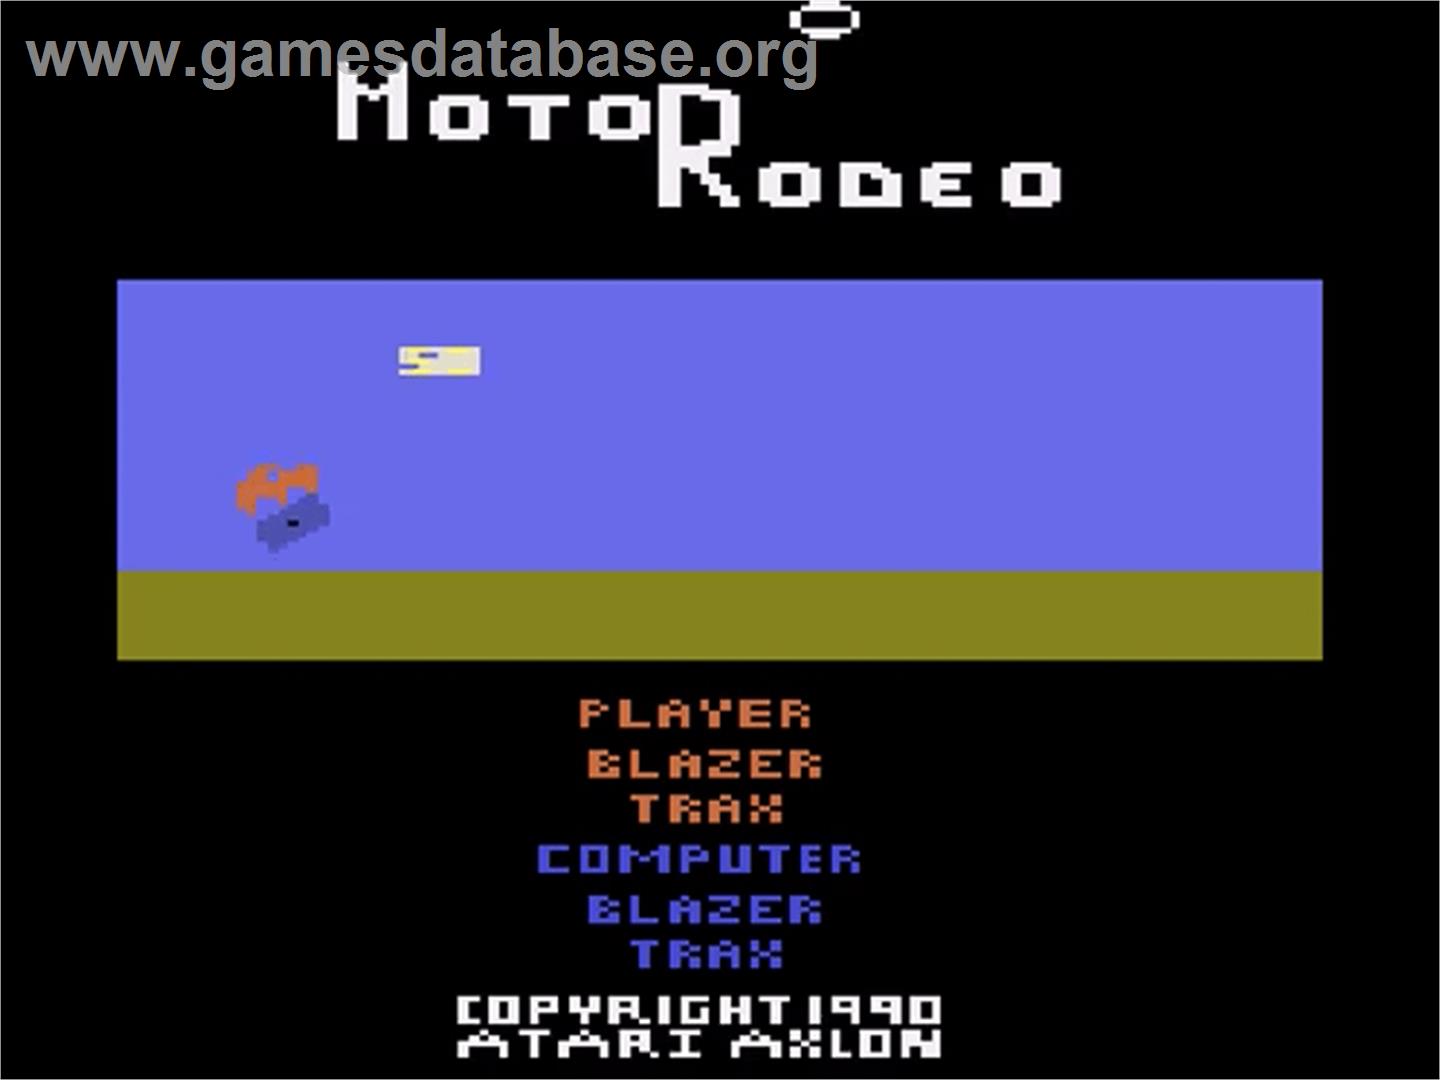 MotoRodeo - Atari 2600 - Artwork - Title Screen